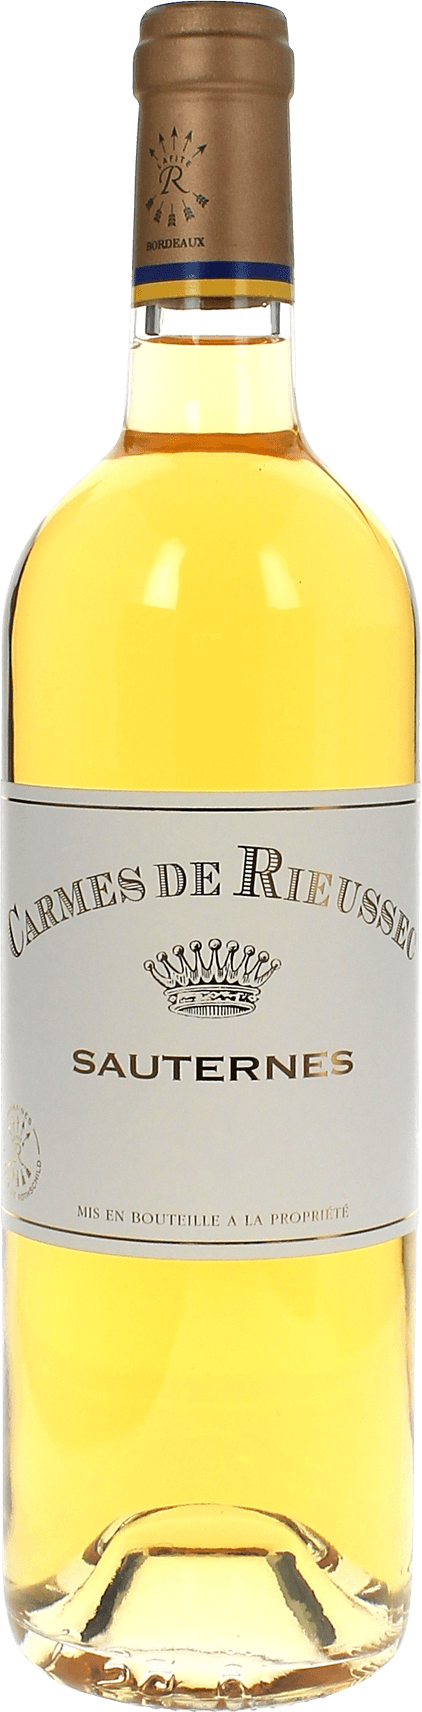 Carmes de rieussec (unit) 2012  Sauternes Barsac, Bordeaux blanc